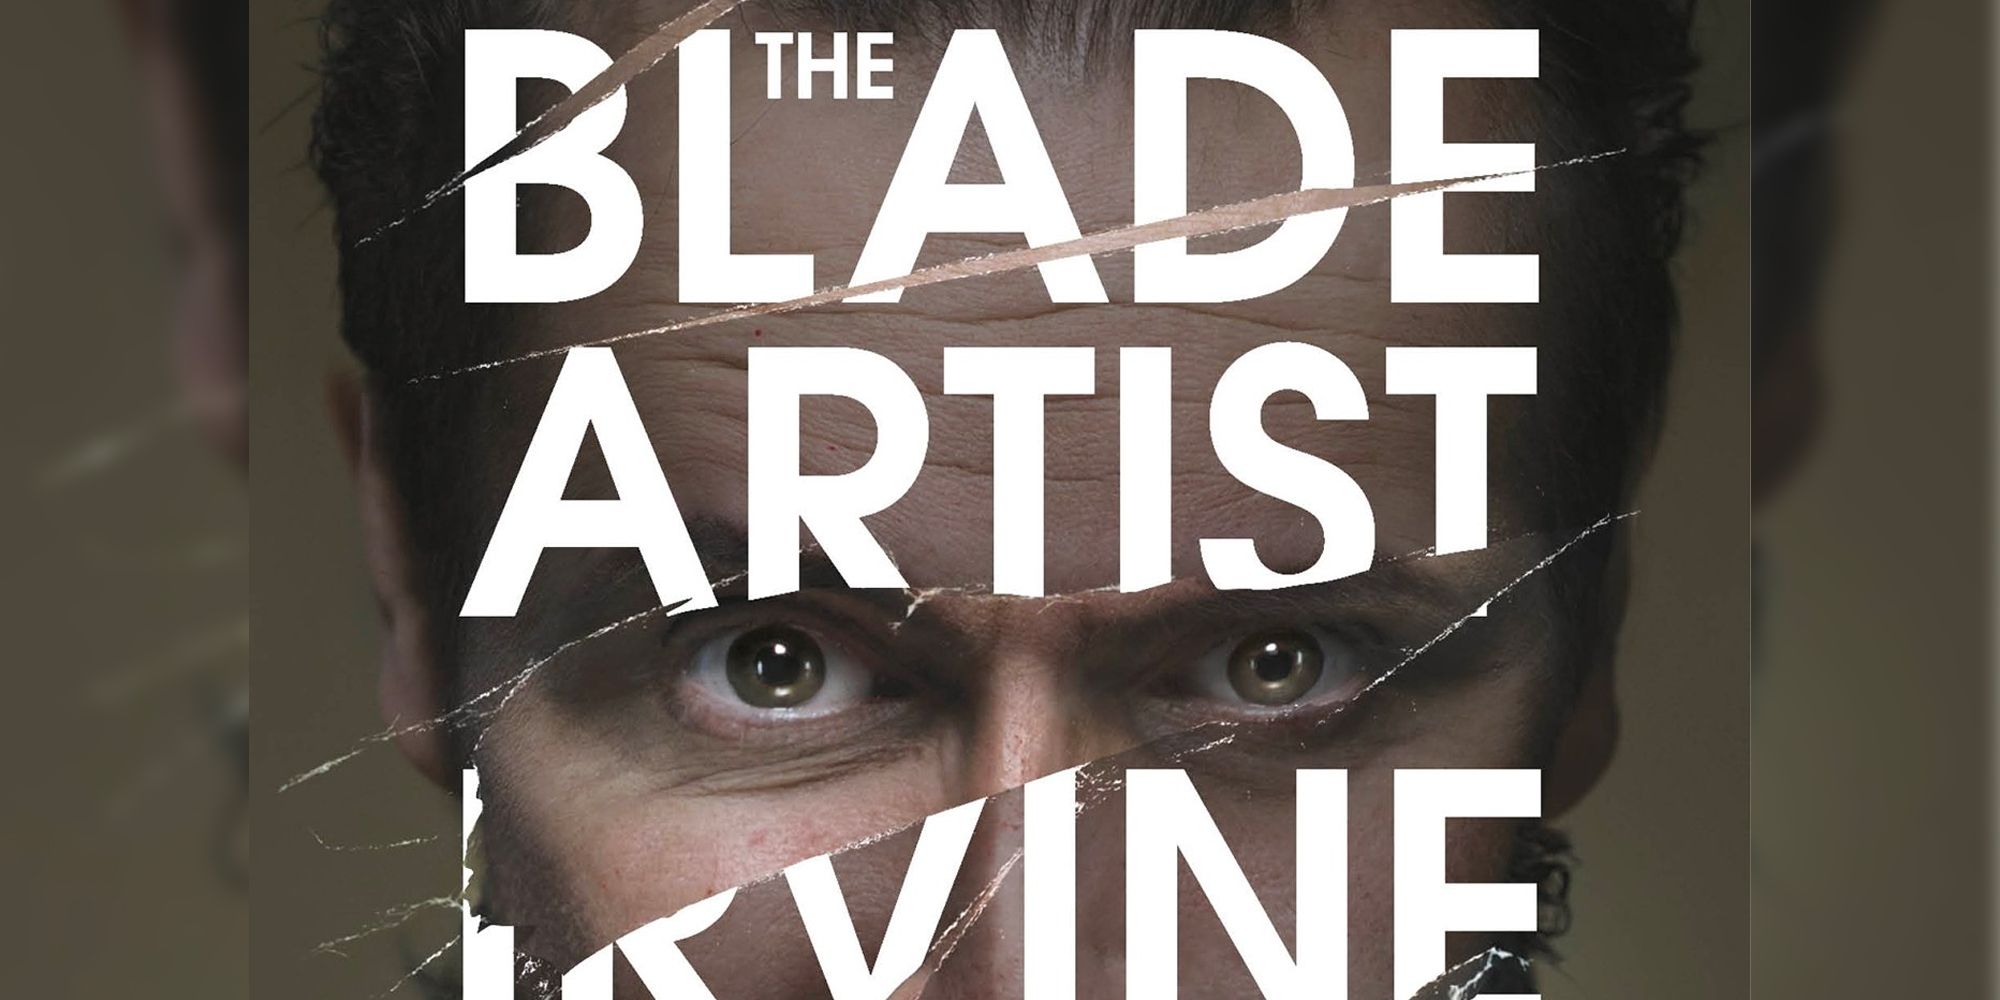 The Blade Artist book